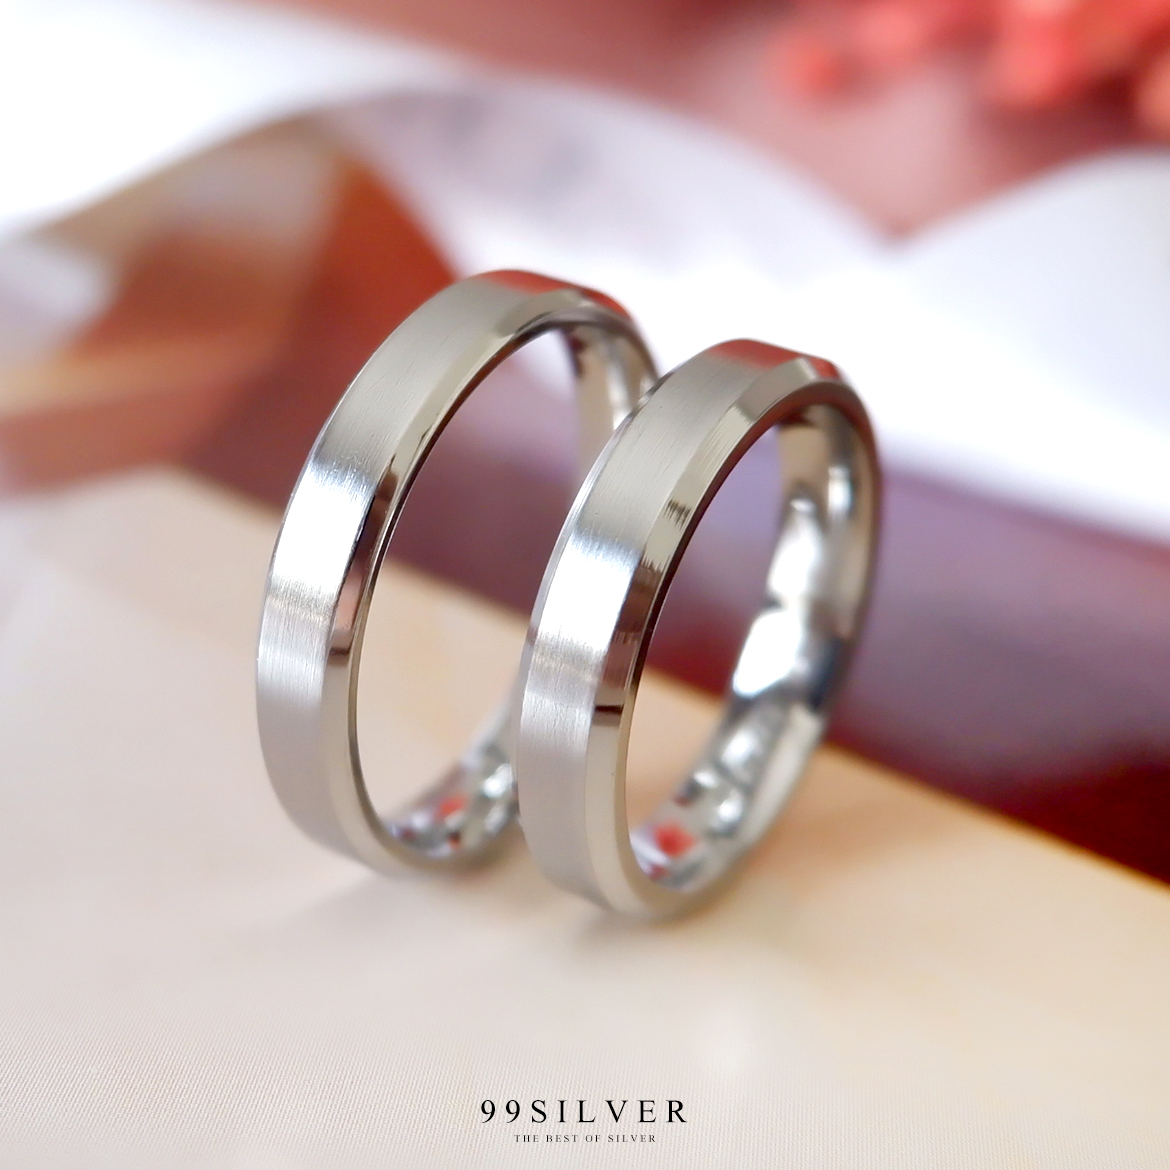 แหวนสแตนเลสแท้หน้ากว้าง 4 มิลลิเมตร ขอบลดมุมตัดสวยงาม ตัวเรือนสีเงินด้าน ขอบเงา